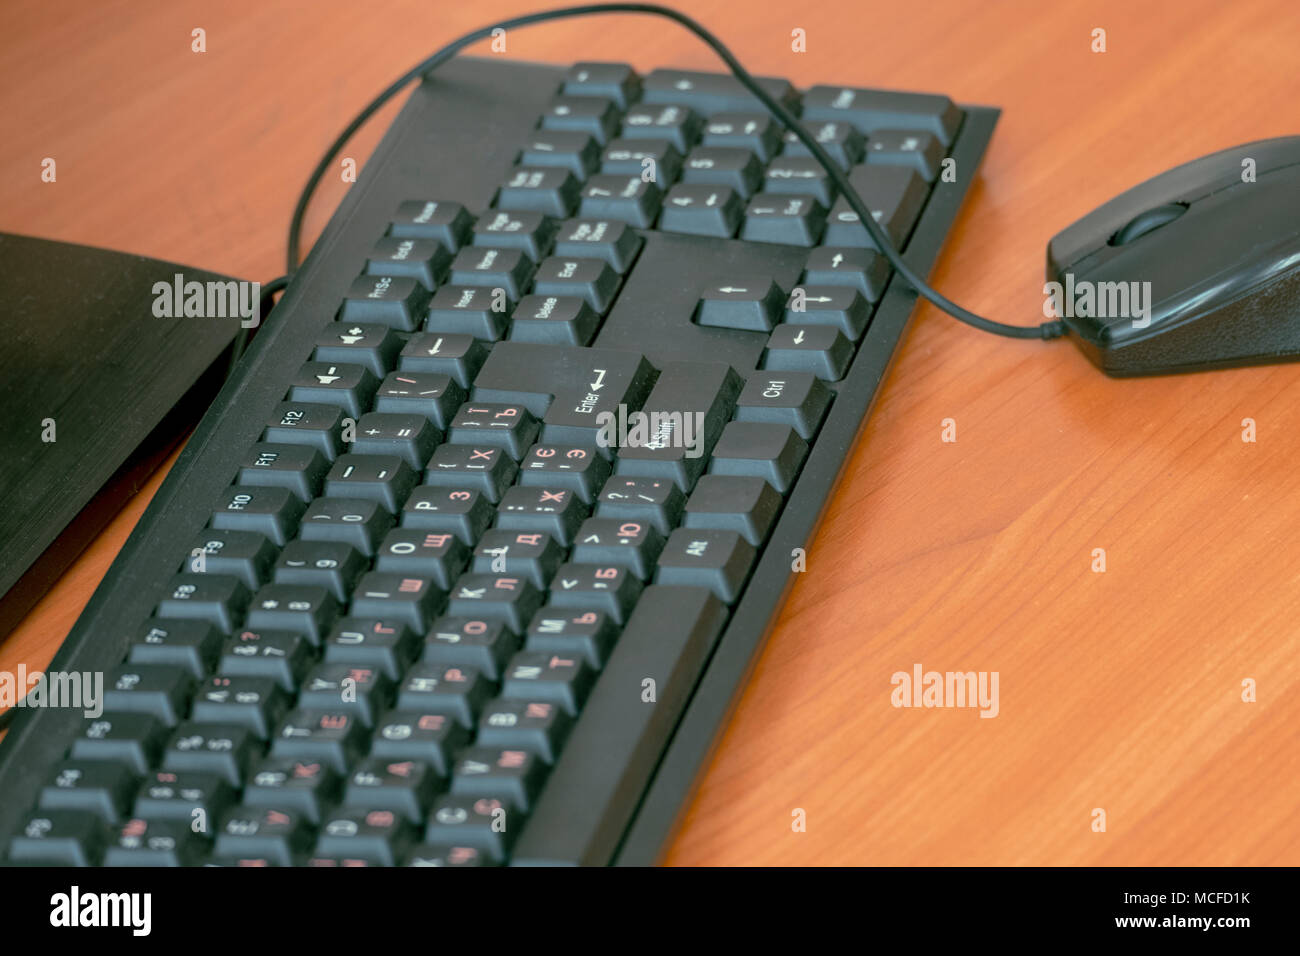 Tastatur und Maus vom Computer auf den Tisch Stockfotografie - Alamy